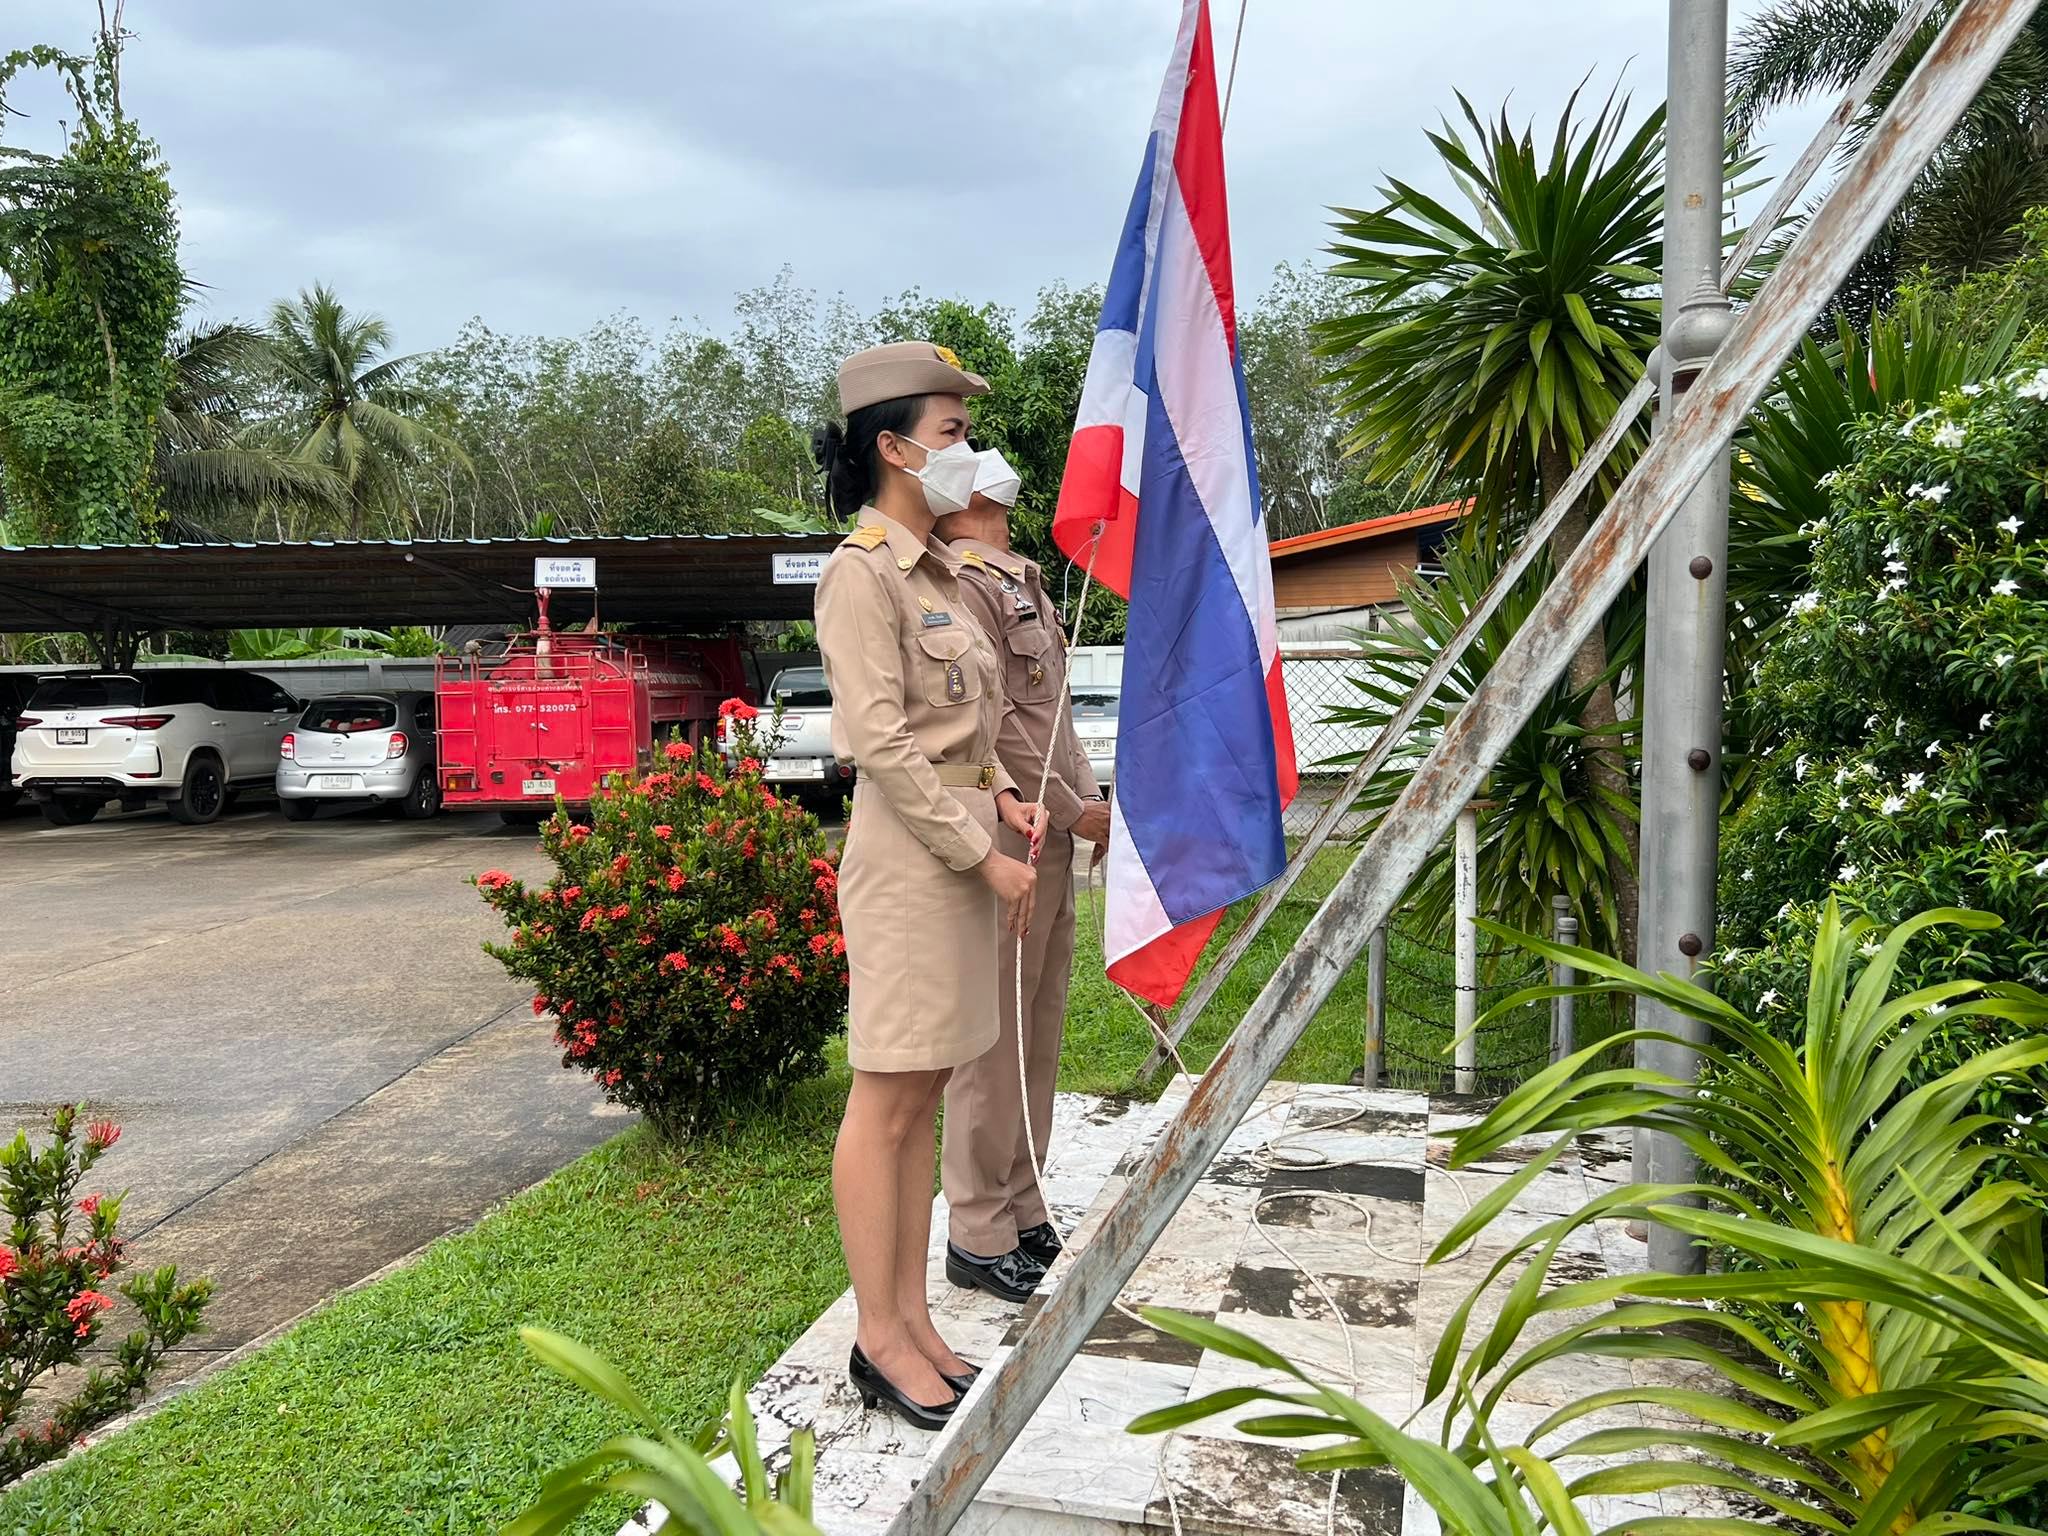 องค์การบริหารส่วนตำบลนาพญาจัดกิจกรรมเคารพธงชาติและร้องเพลงชาติไทย เนื่องในวันพระราชทานธงชาติไทย